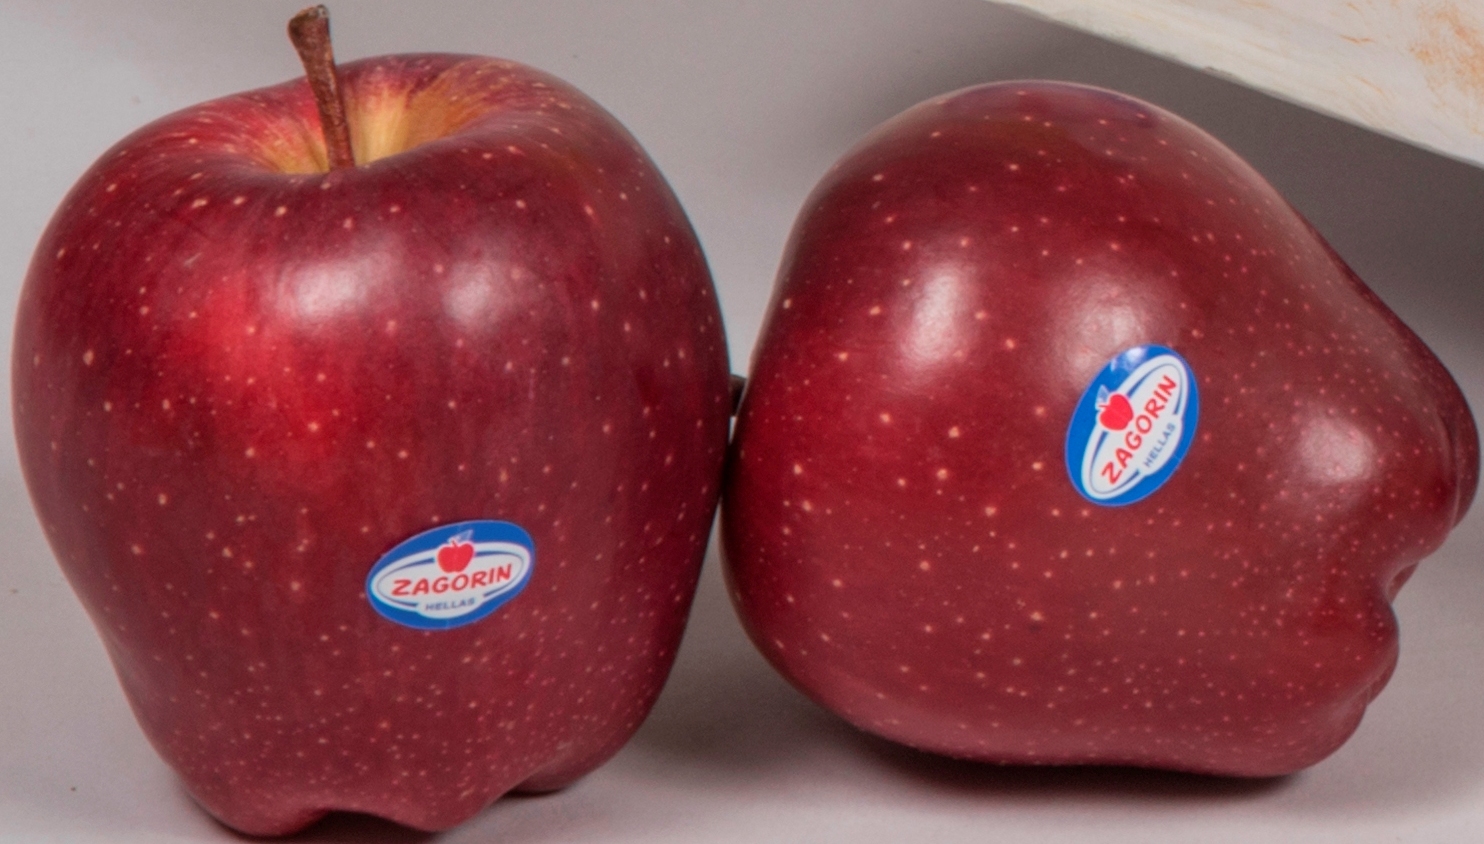 Μήλα ZAGORIN:  Ανανεώνουν το ραντεβού με τους καταναλωτές για τον επόμενο Σεπτέμβριο 